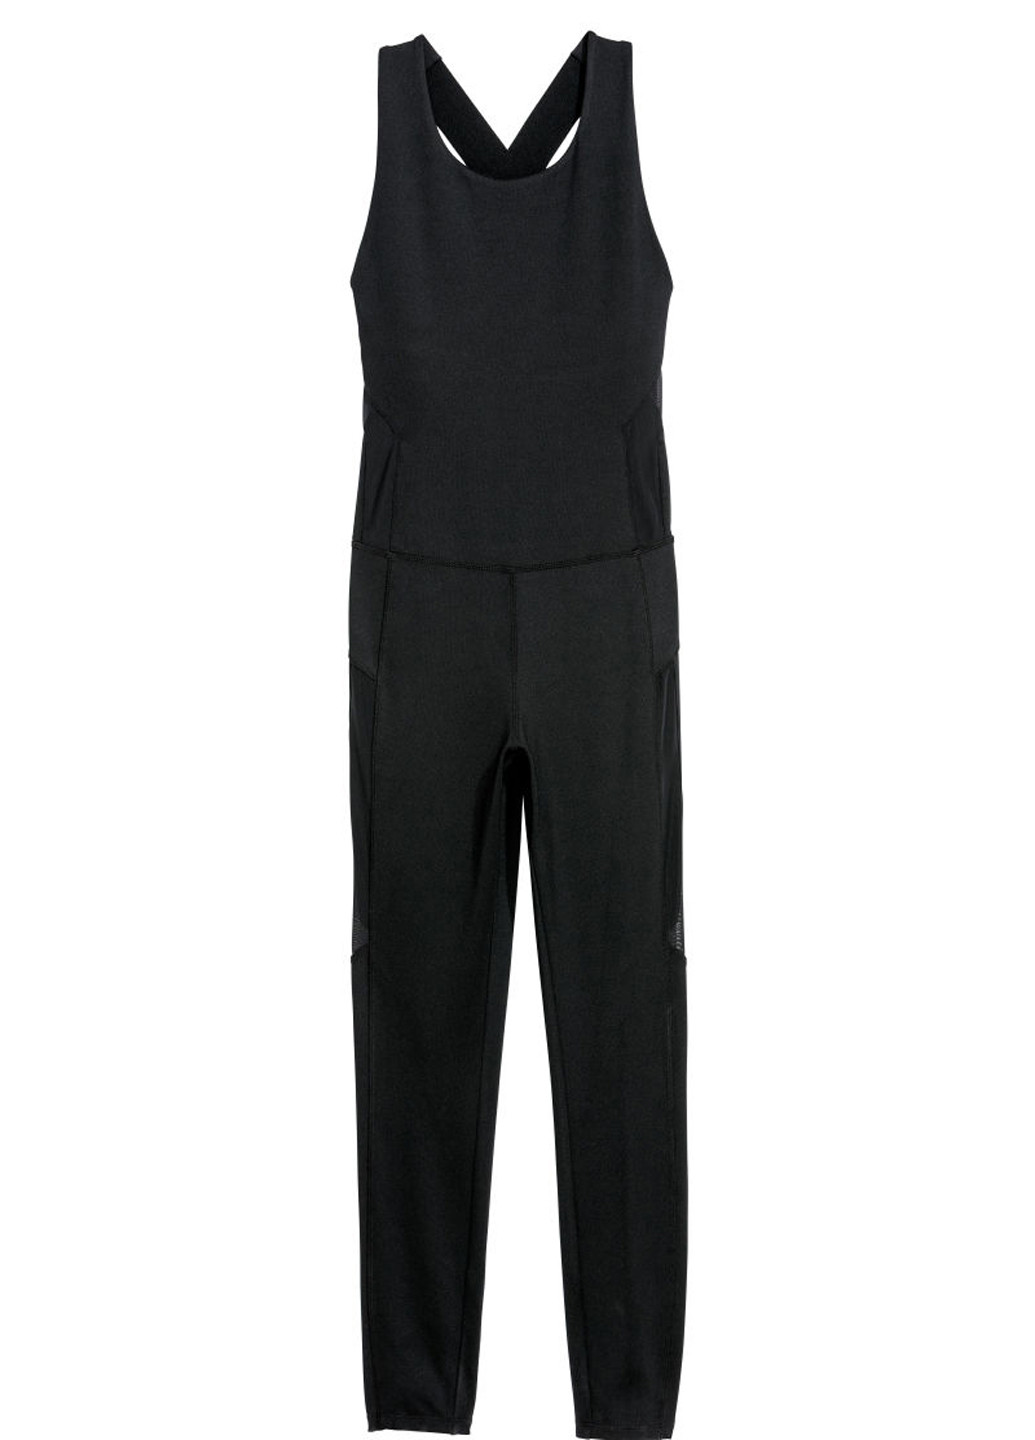 Комбінезон H&M комбінезон-брюки однотонний чорний спортивний